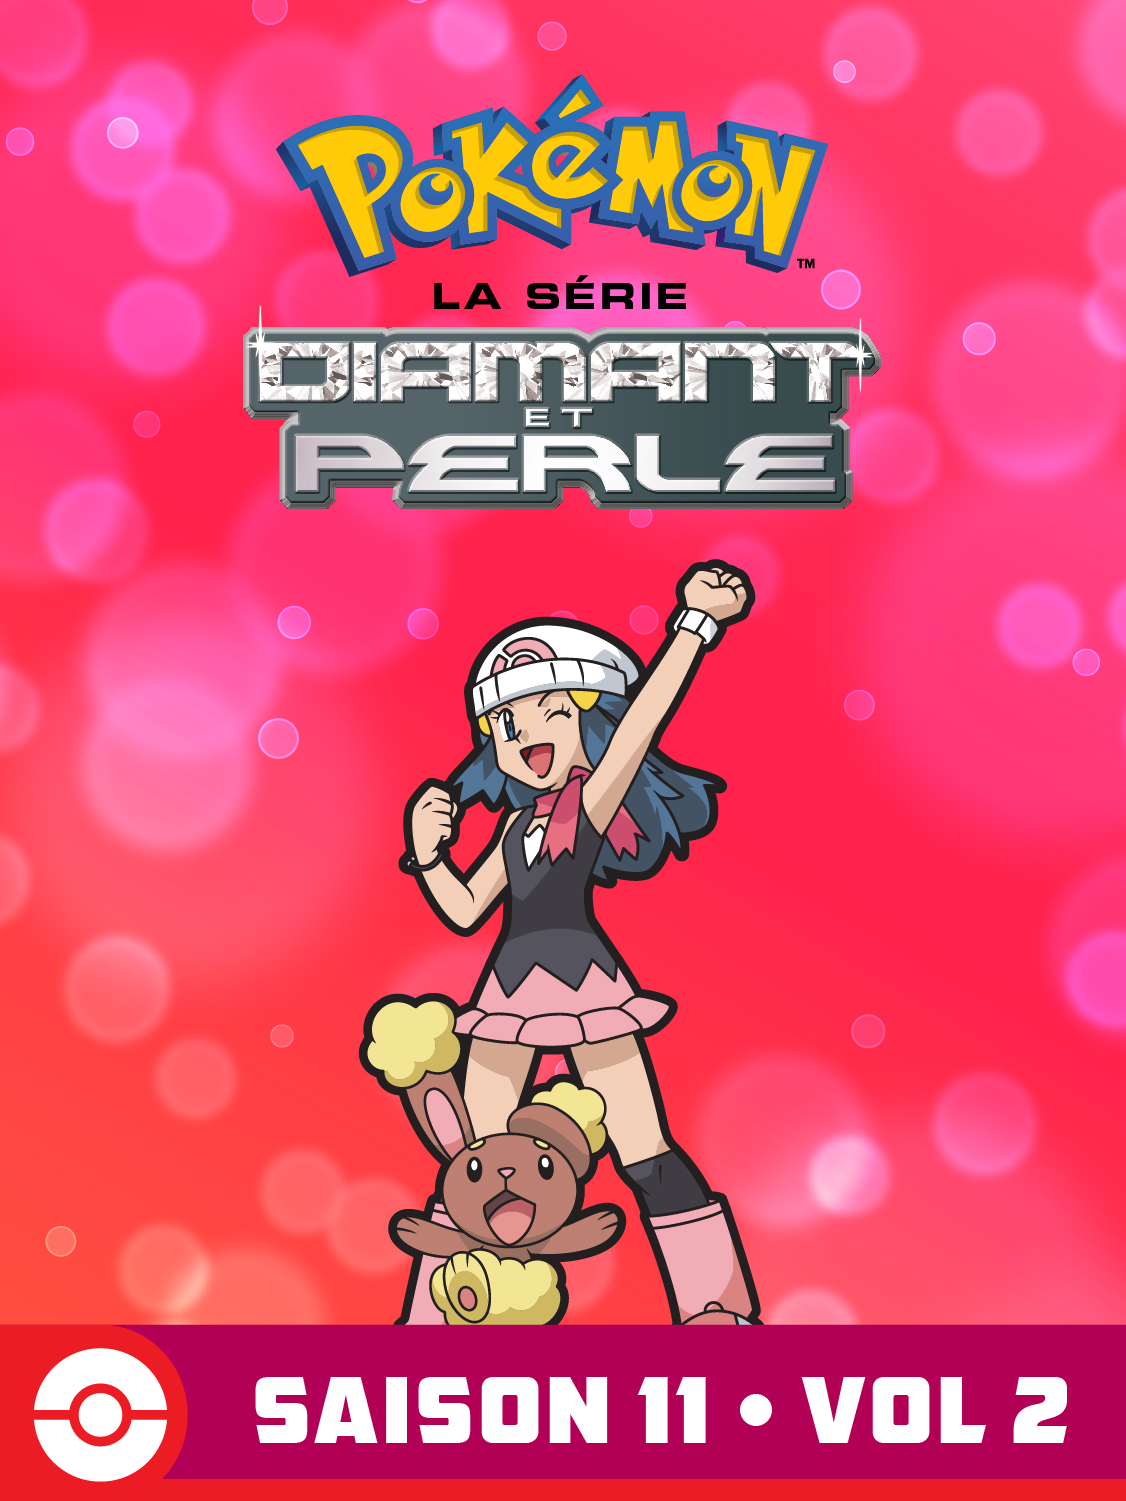  DP Battle Dimension Volume 2 Saison 11 de Pokémon la Série - 2010 